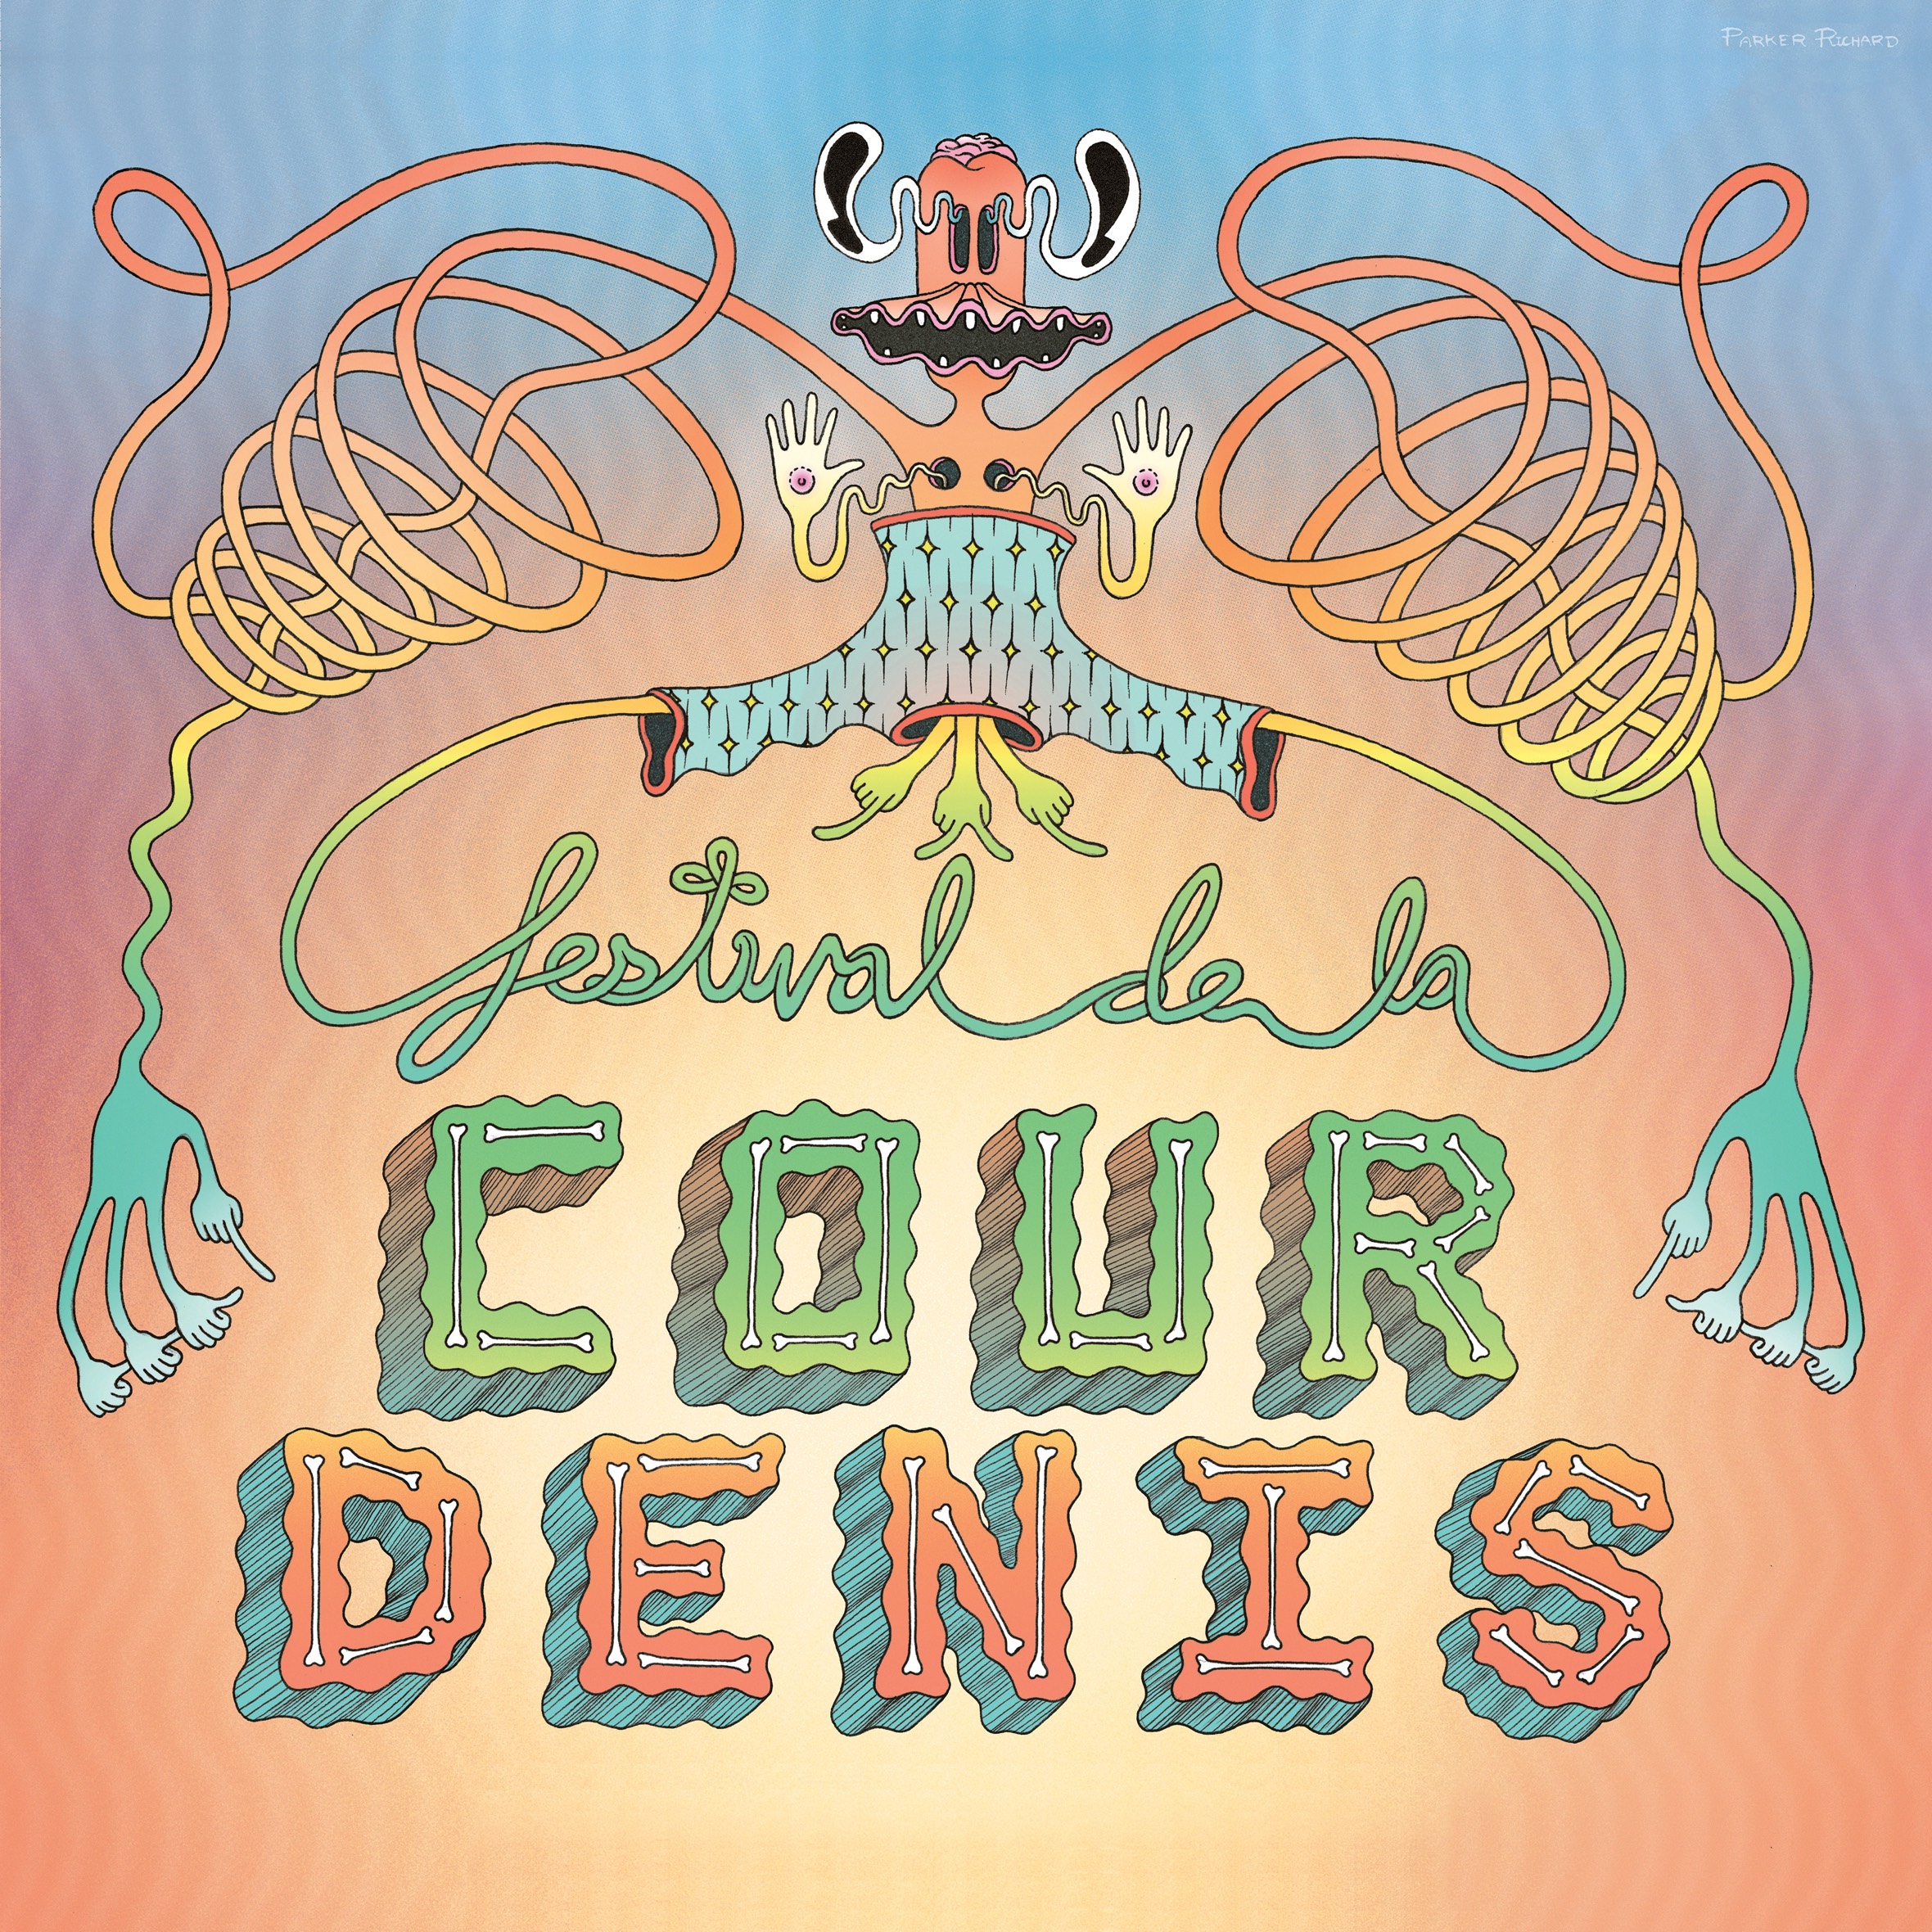 2016 Festival de la Cour Denis poster illustration cropped into a square